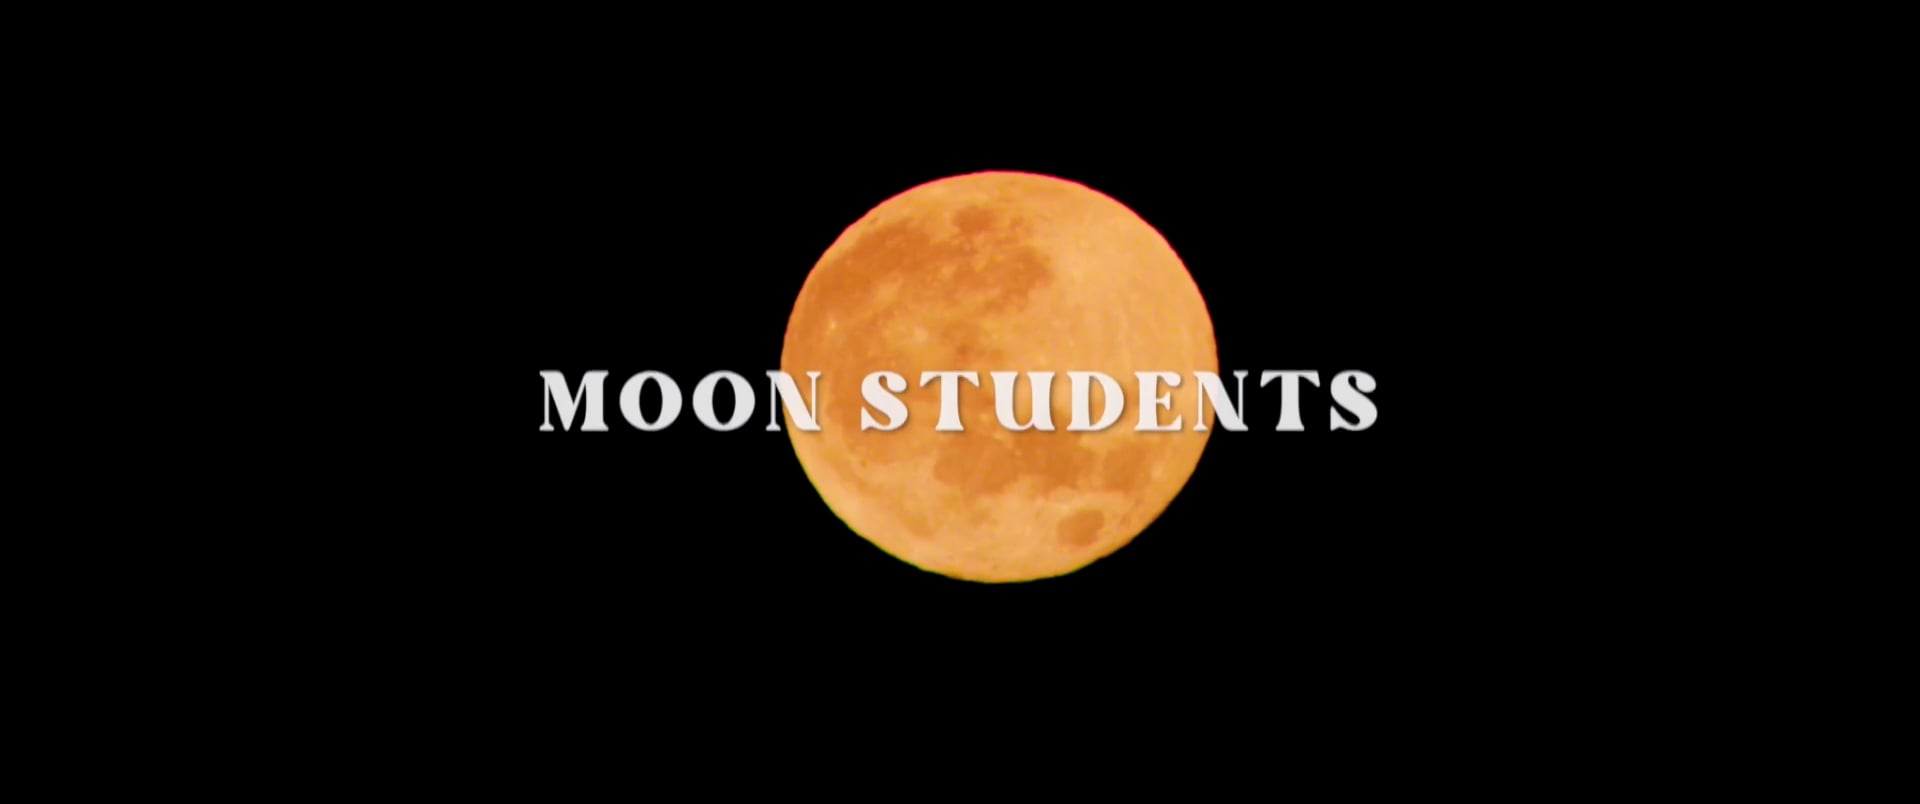 Moon Students Trailer on Vimeo